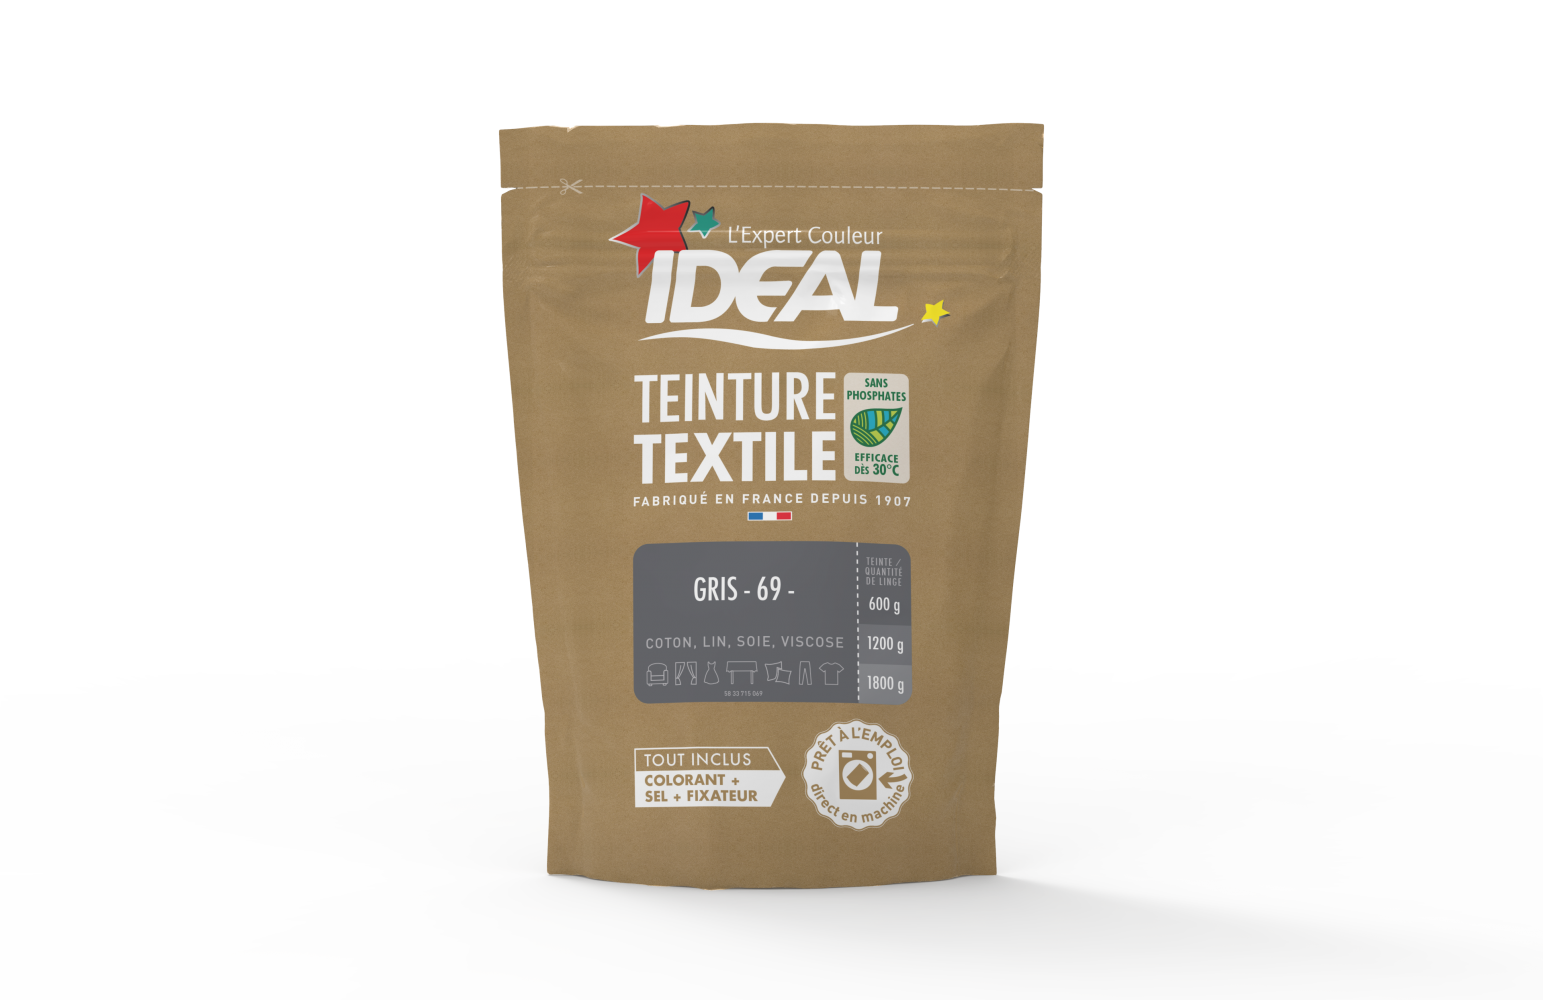 Teinture textile IDEAL Gris 0.35 kilogramme